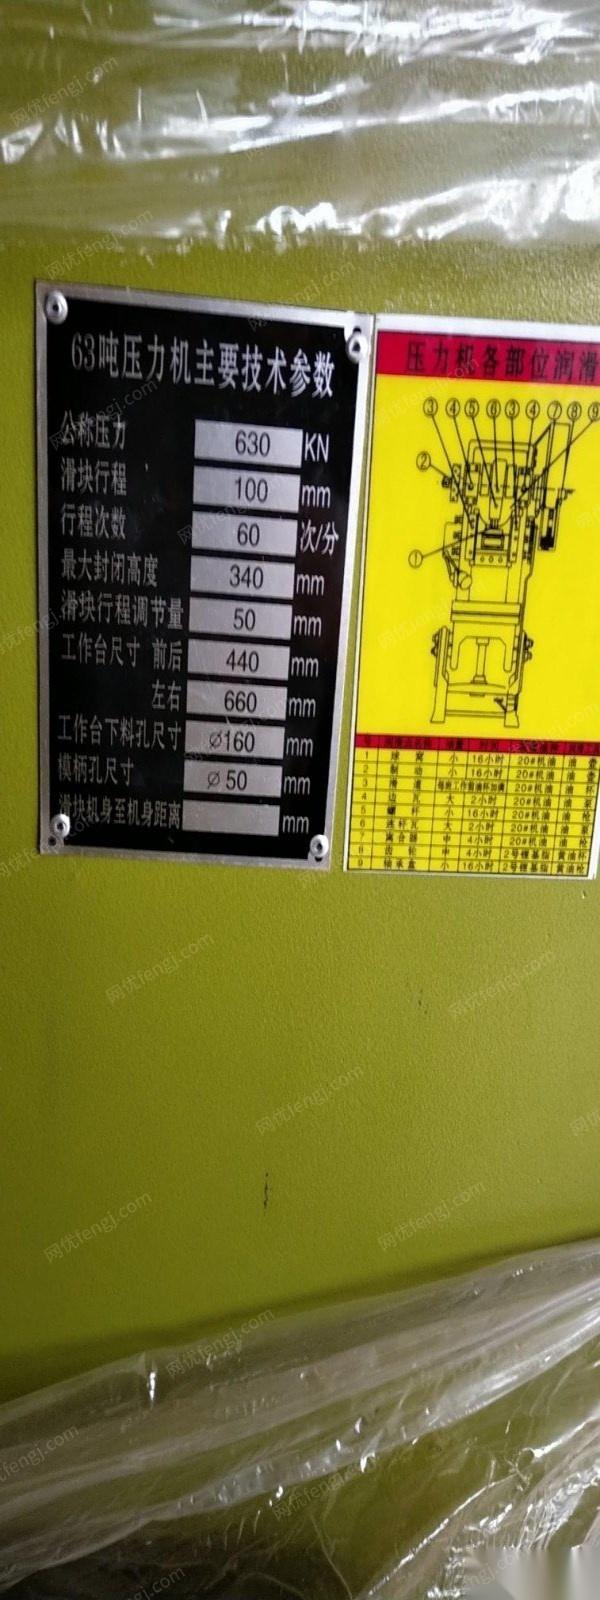 上海金山区4台63T压力机出售  出售价15000元/台.打包卖